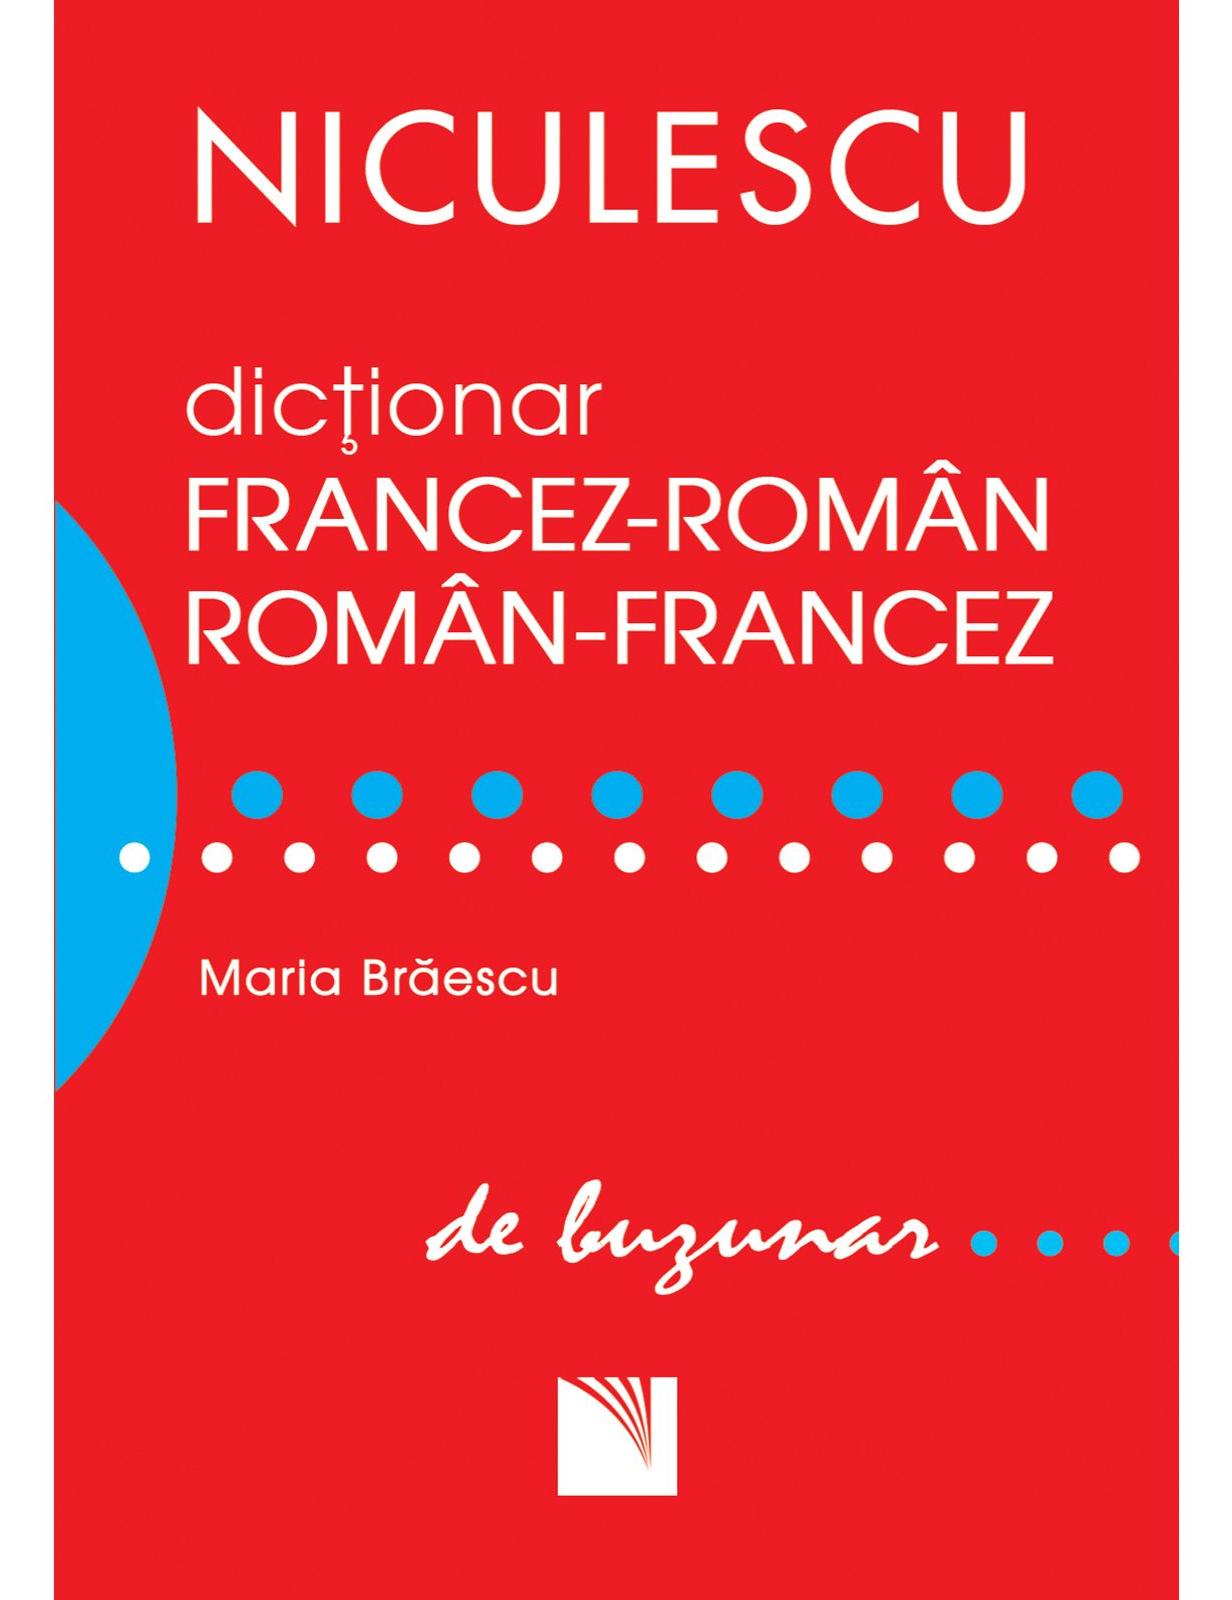 Dictionar francez-roman, roman-francez de buzunar - Maria Braescu